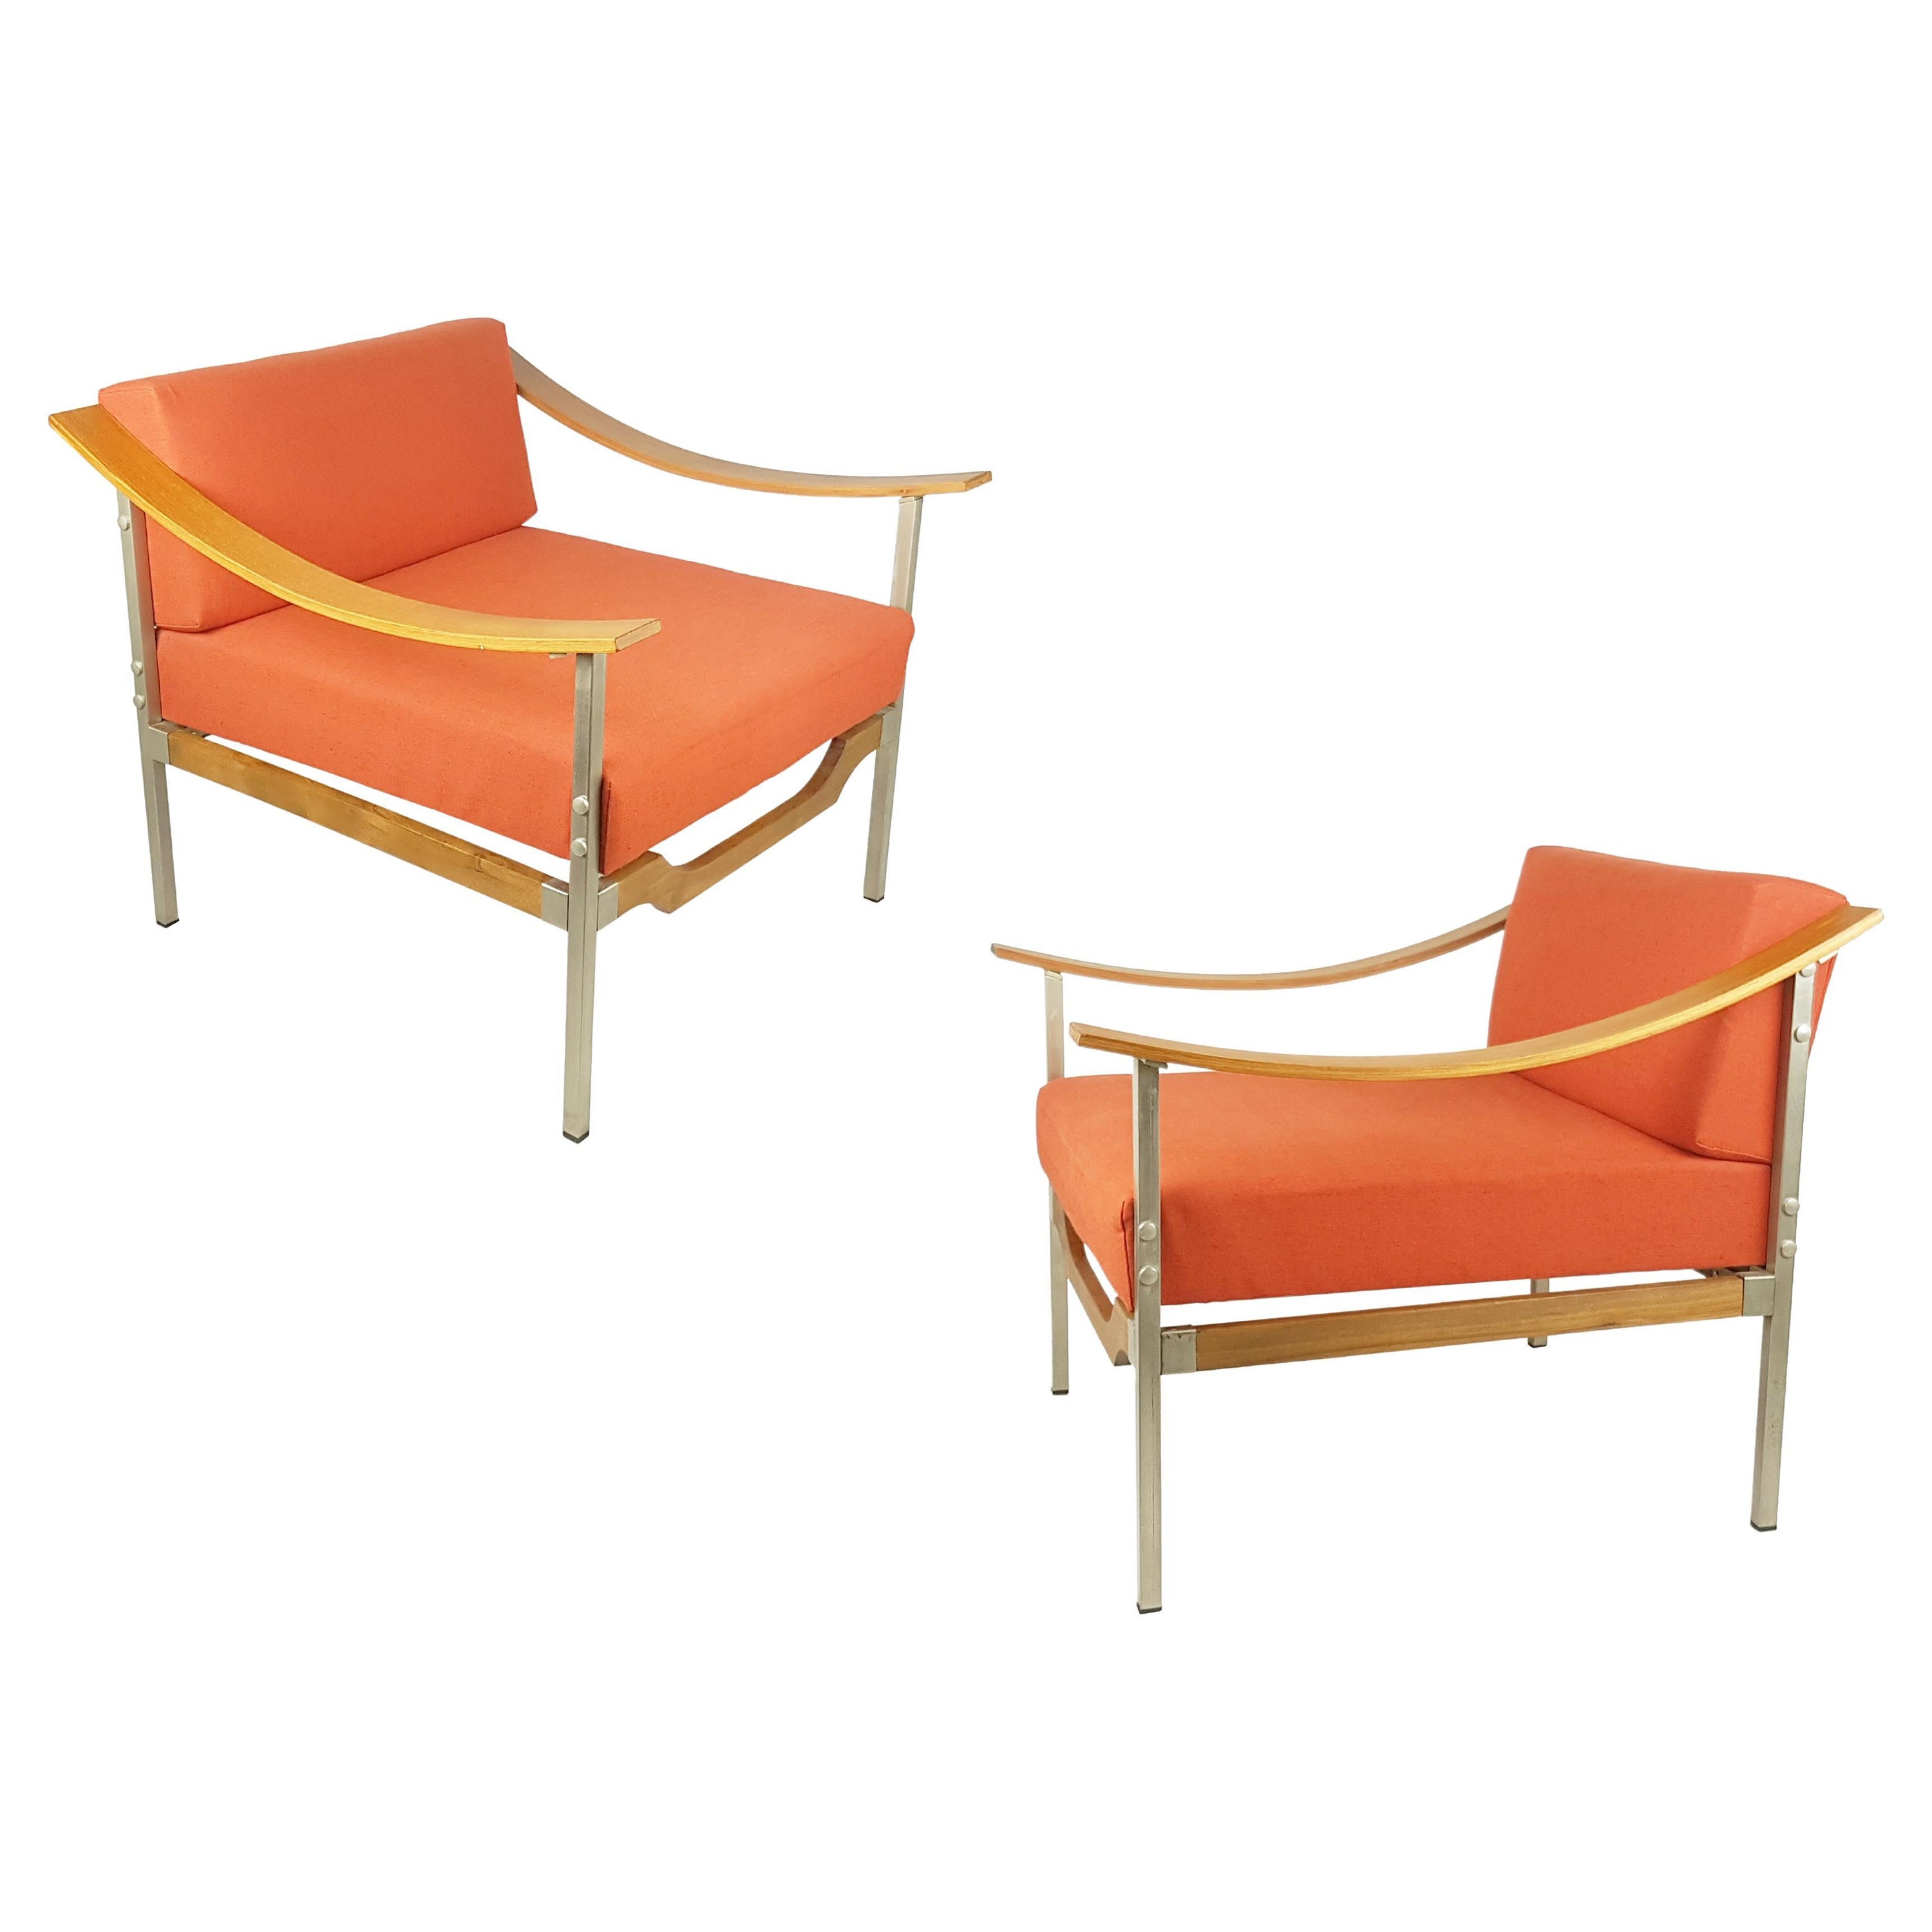 Sessel aus rotem/orangem Stoff, Teakholz und Metall aus den 1960er Jahren, 2er-Set